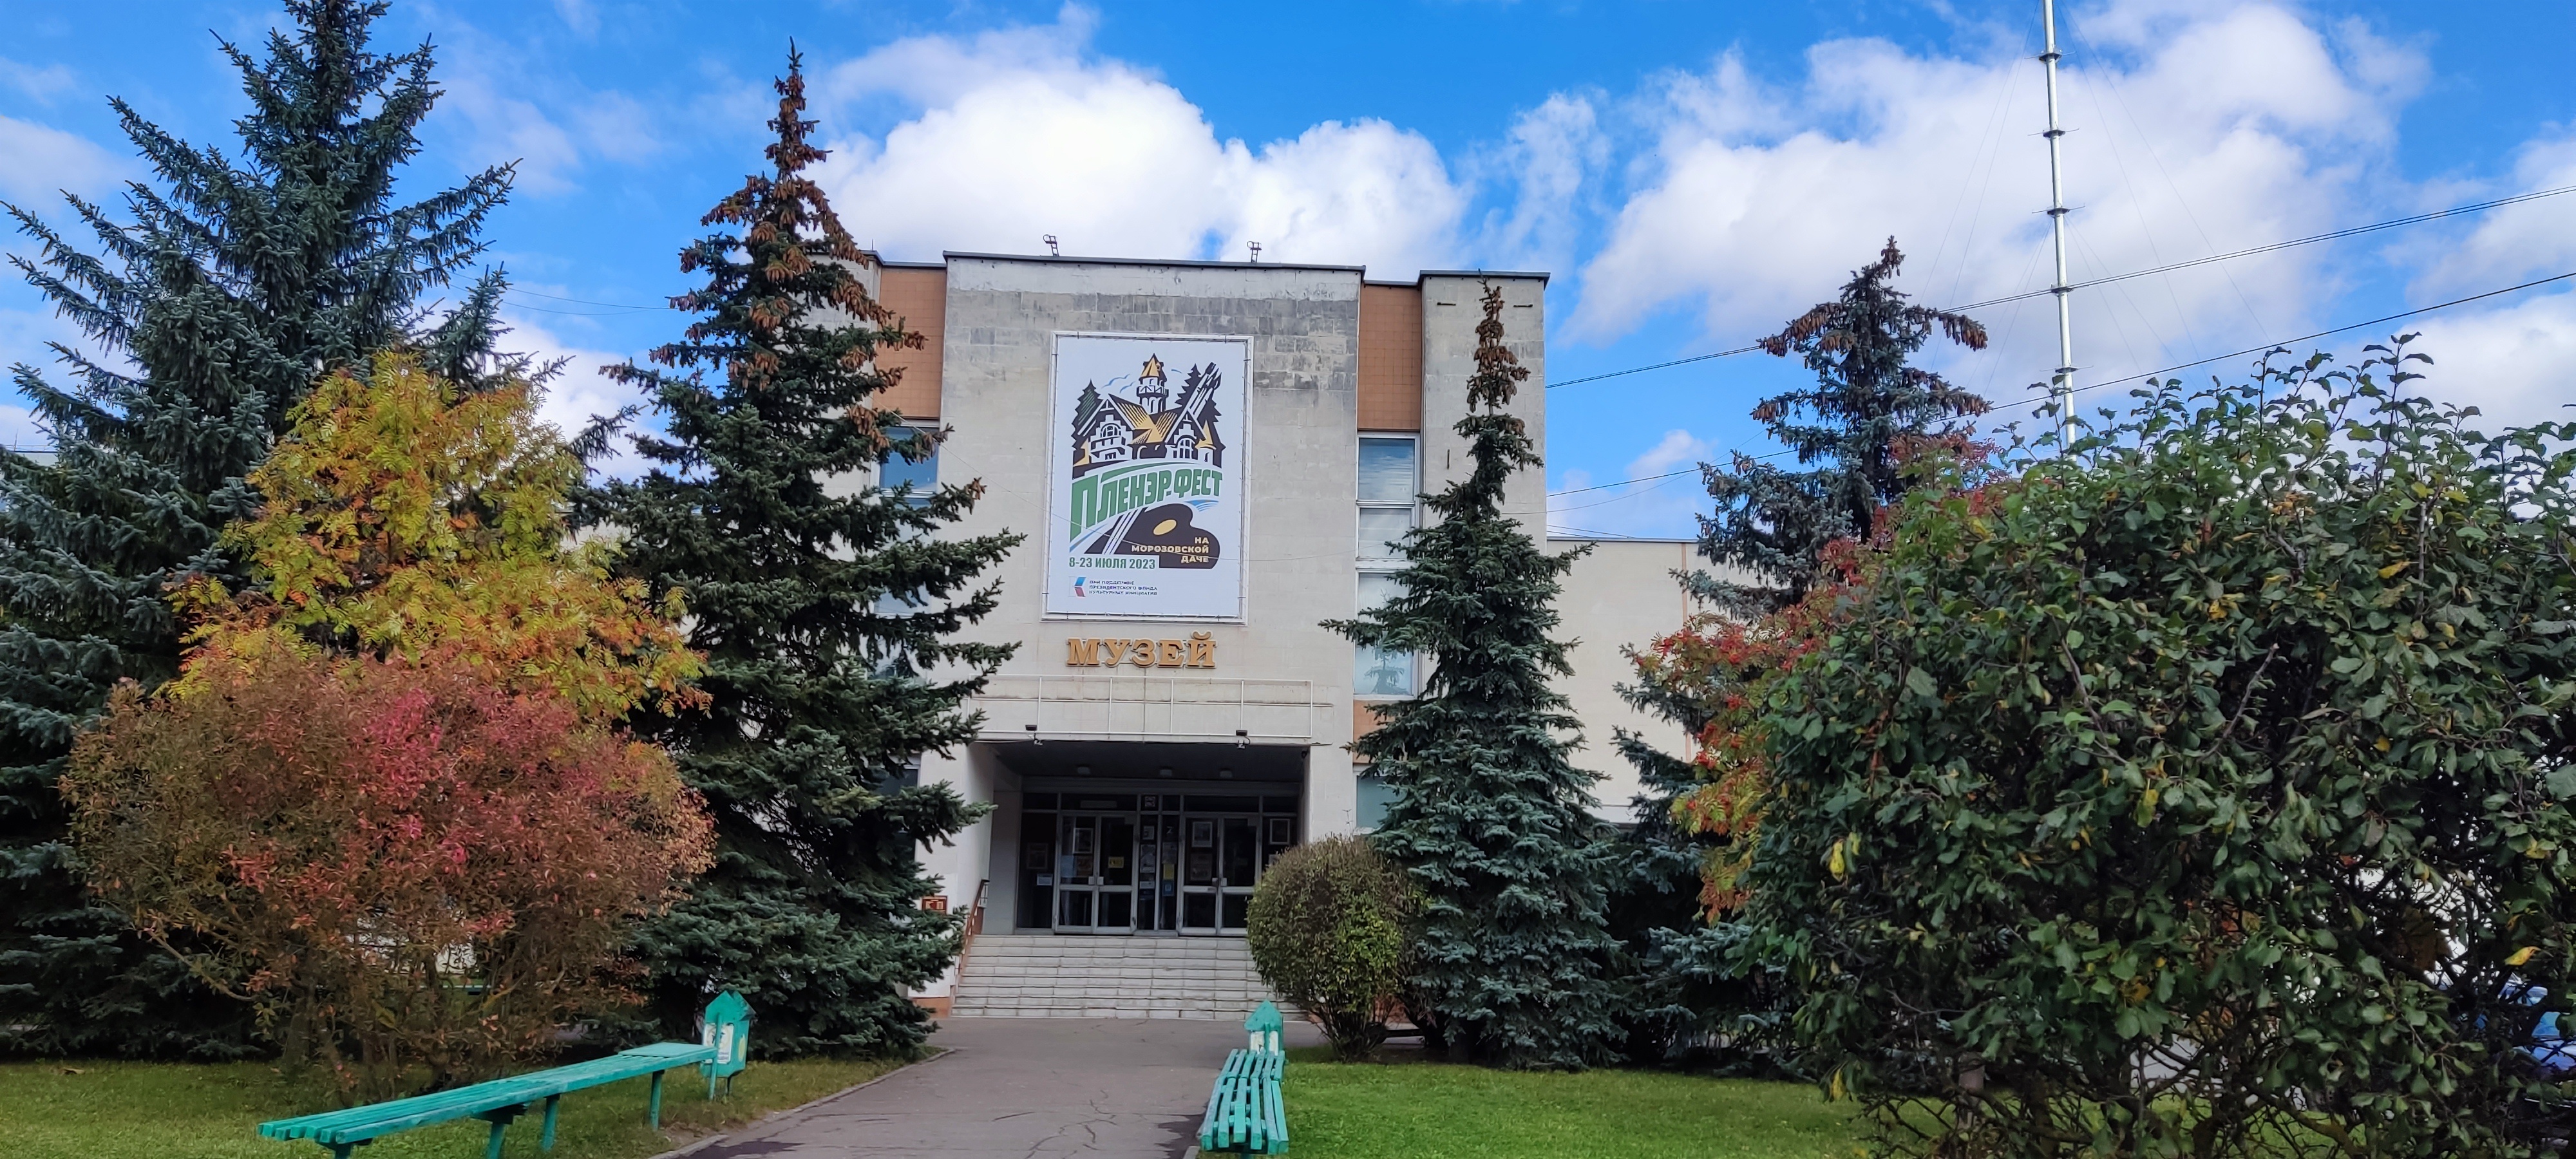 Музей истории города Обнинска